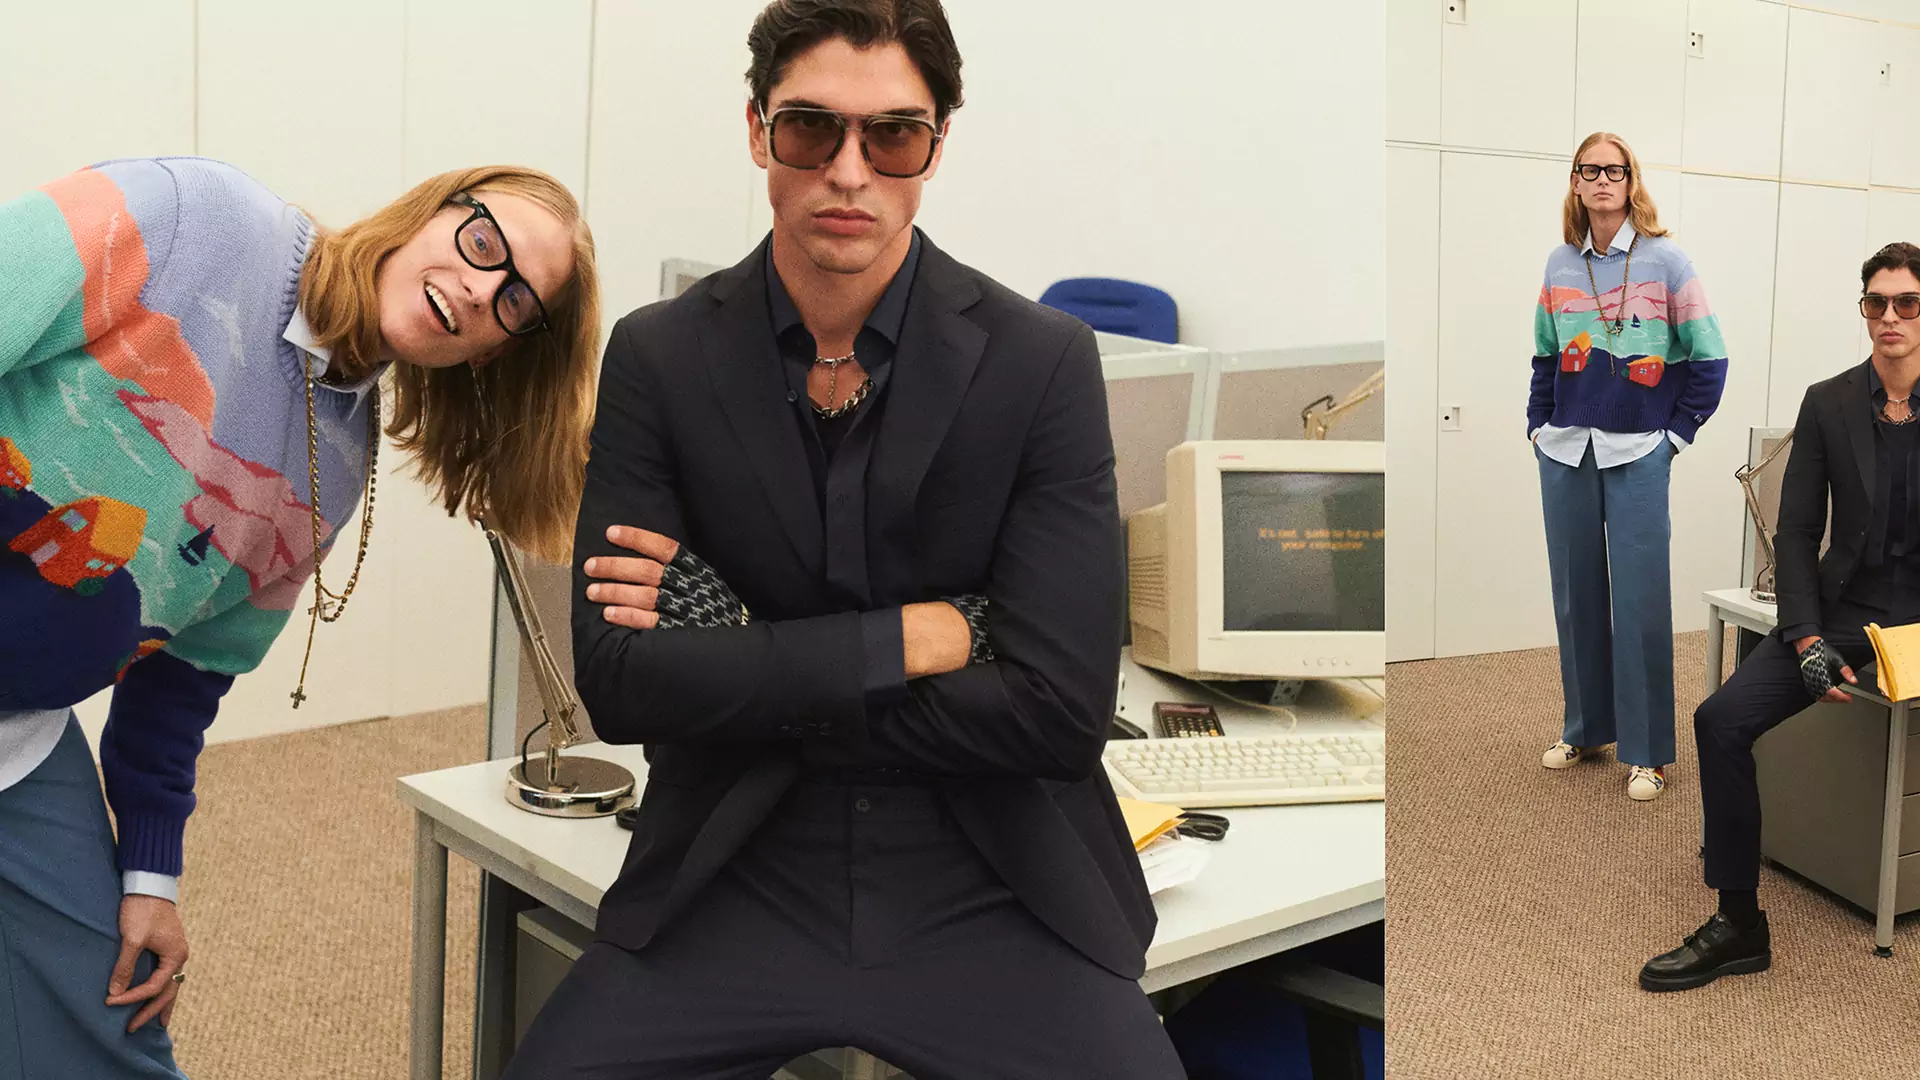 Back to office & back to high school, czyli stylowy powrót do wyrażania siebie poprzez modę 